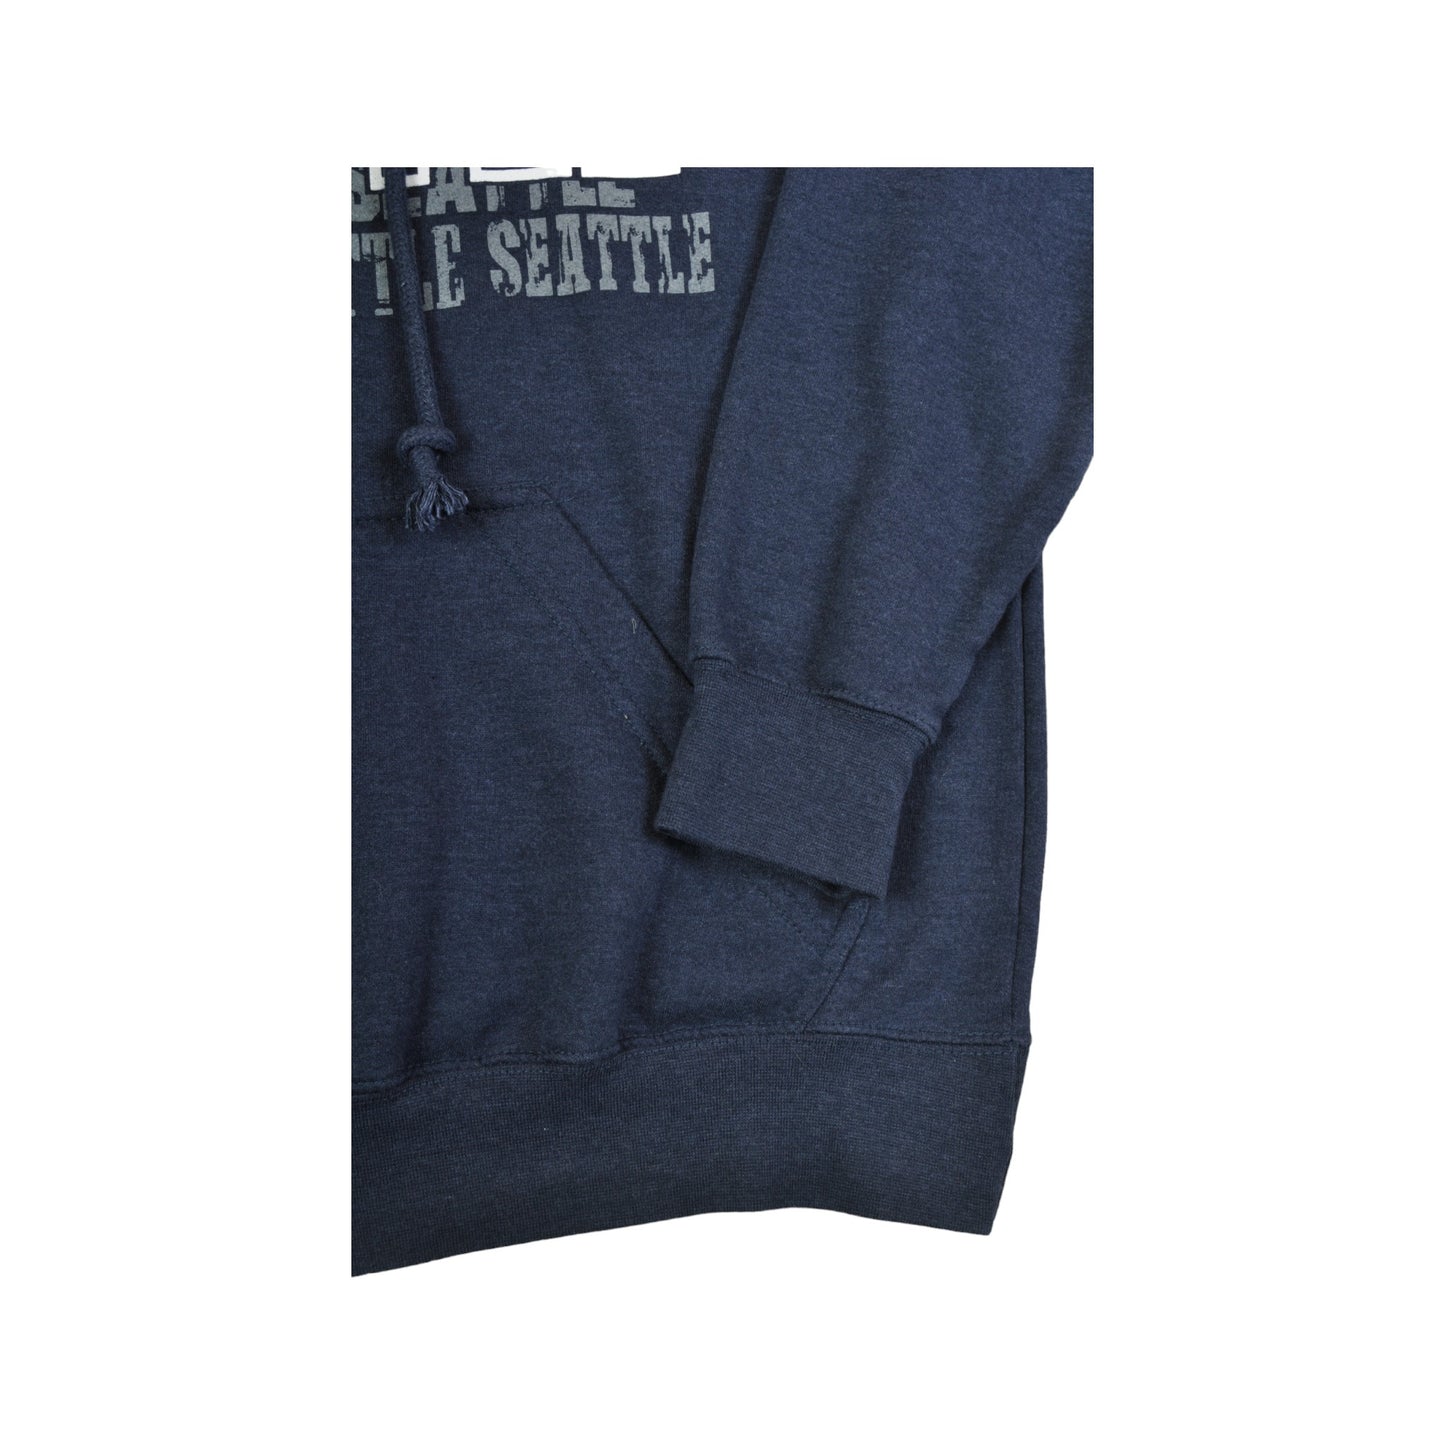 Vintage Seattle Hoodie Sweatshirt Navy Small